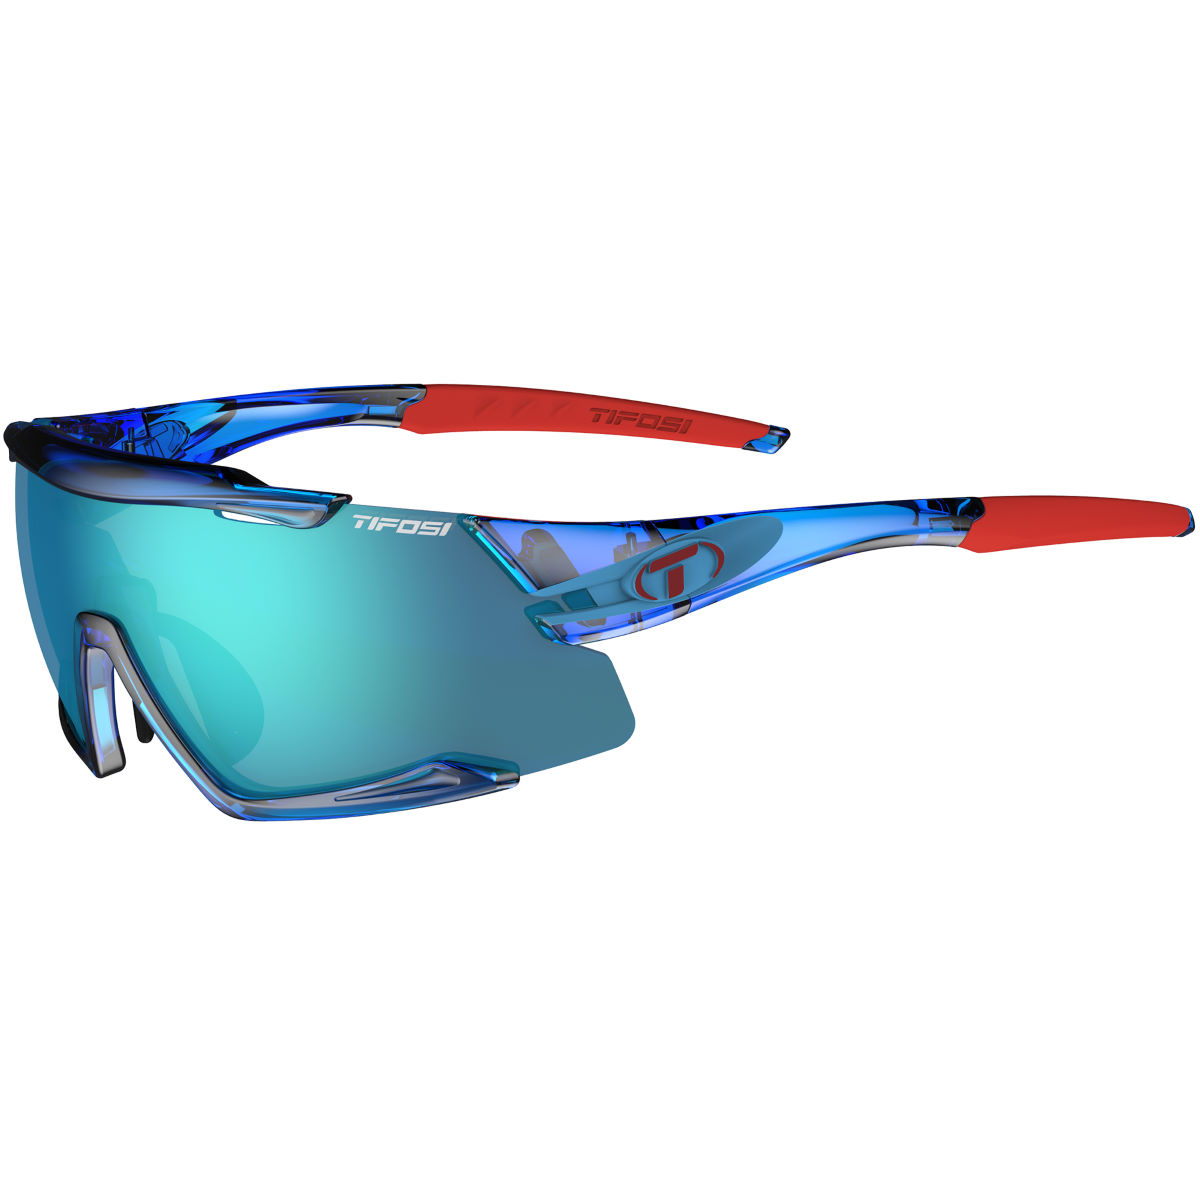 Gafas de sol Tifosi Eyewear Aethon 3 (lentes intercambiables) - Gafas de sol